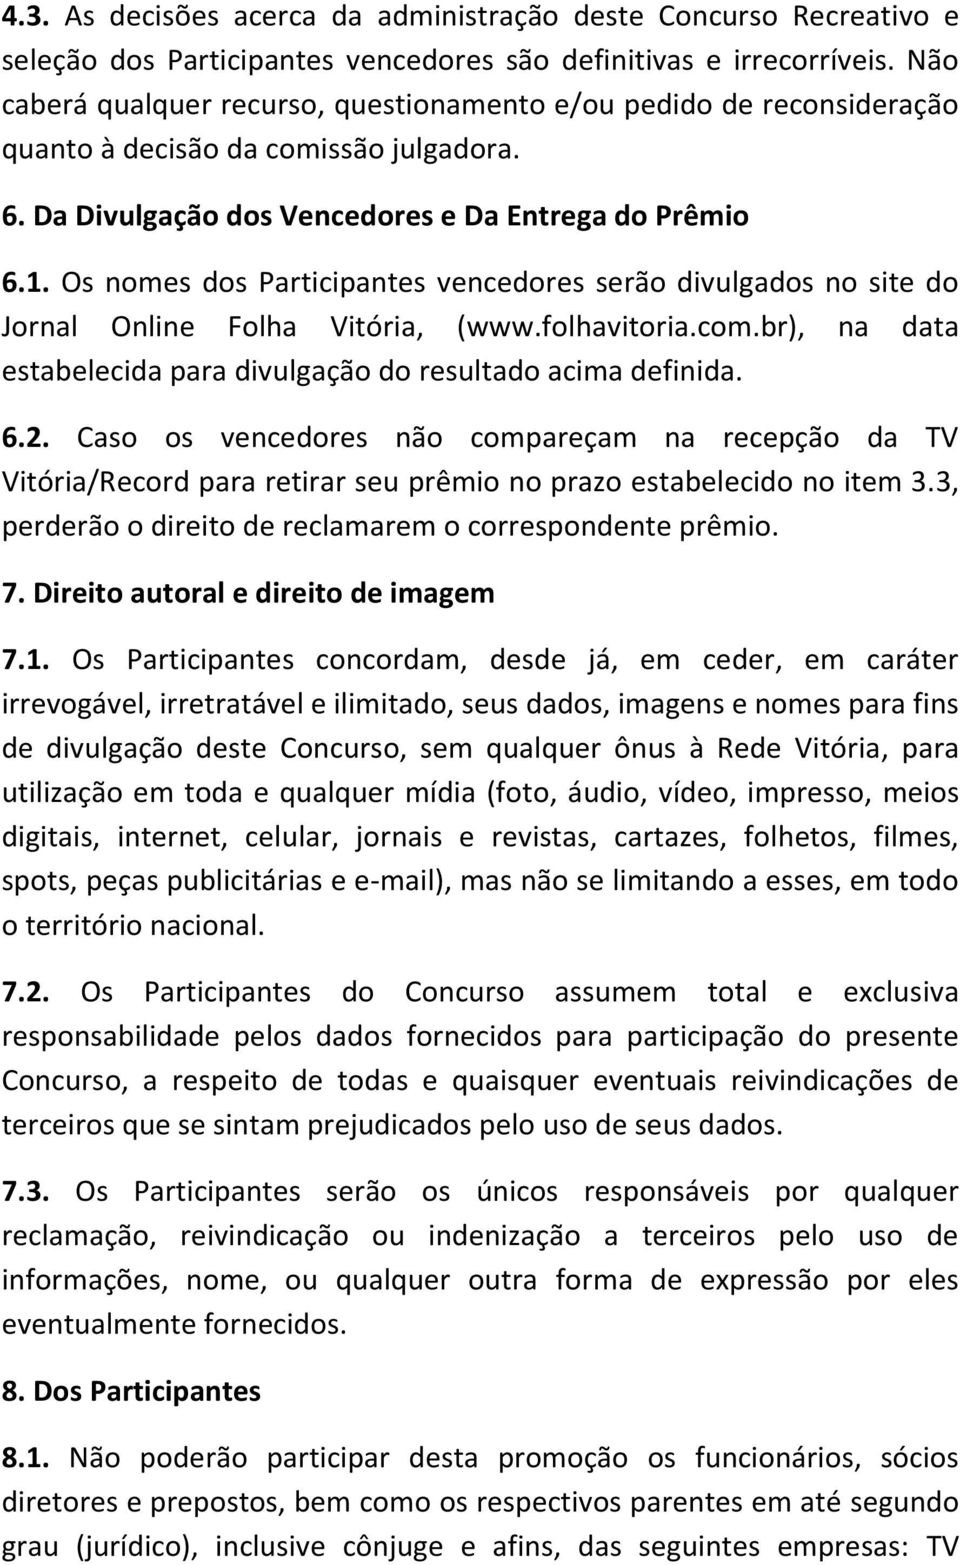 Os nomes dos Participantes vencedores serão divulgados no site do Jornal Online Folha Vitória, (www.folhavitoria.com.br), na data estabelecida para divulgação do resultado acima definida. 6.2.